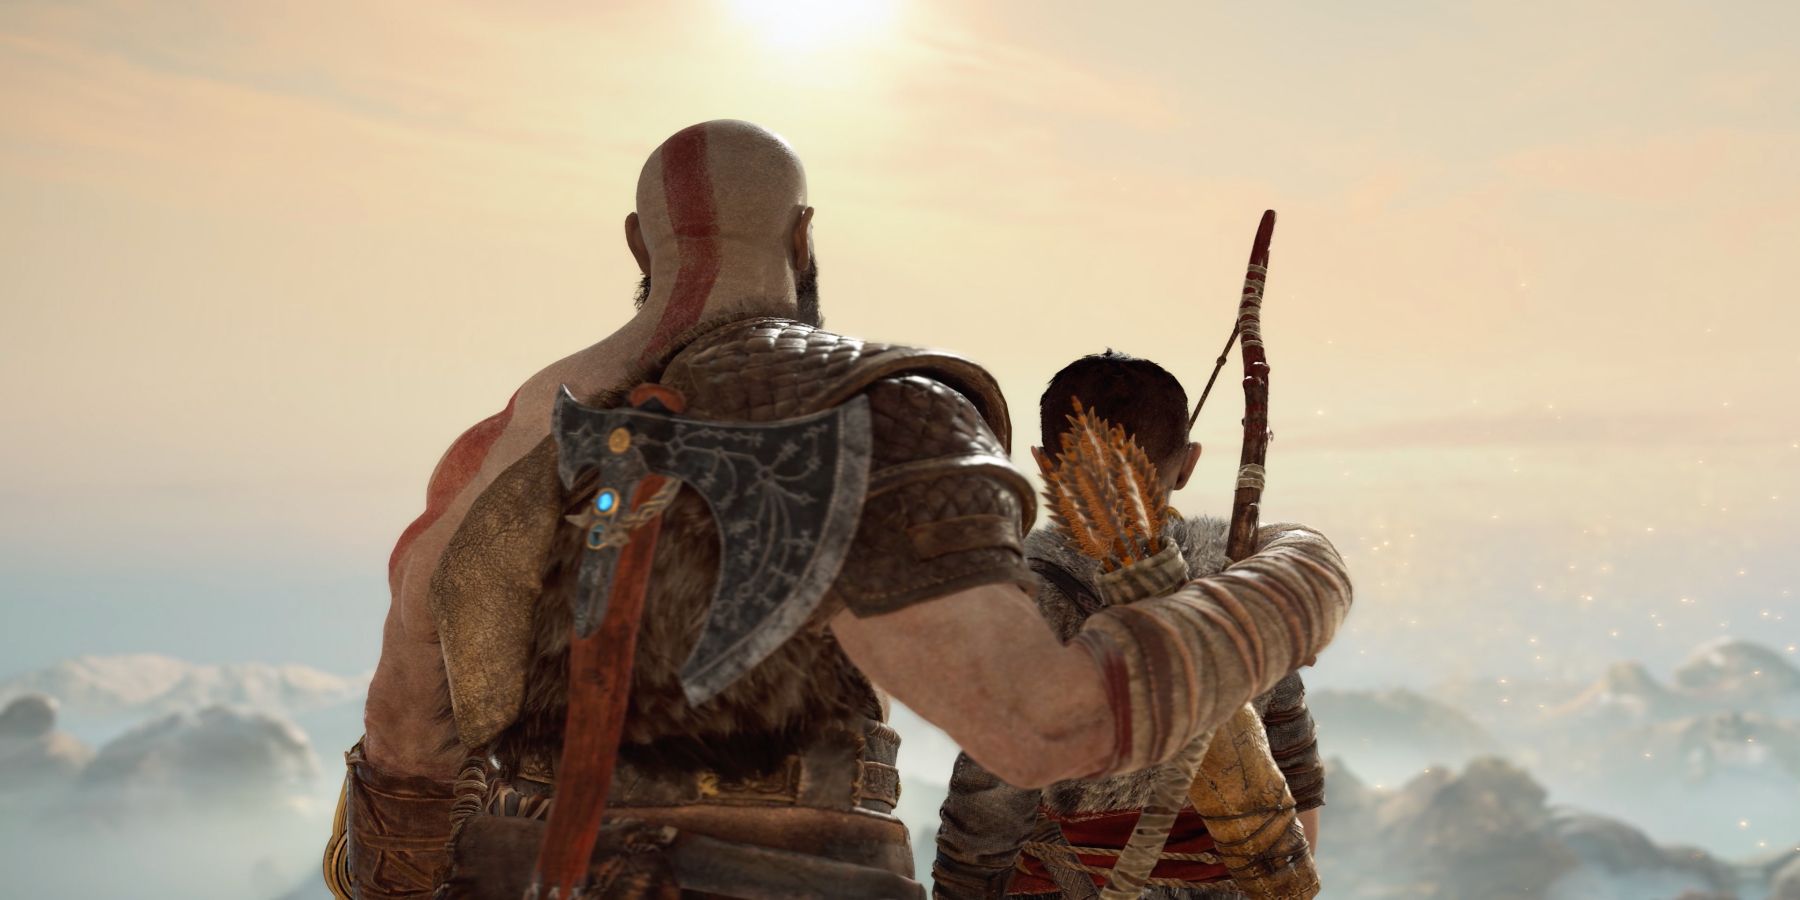 First look at God of War Ragnarök – PlayStation.Blog